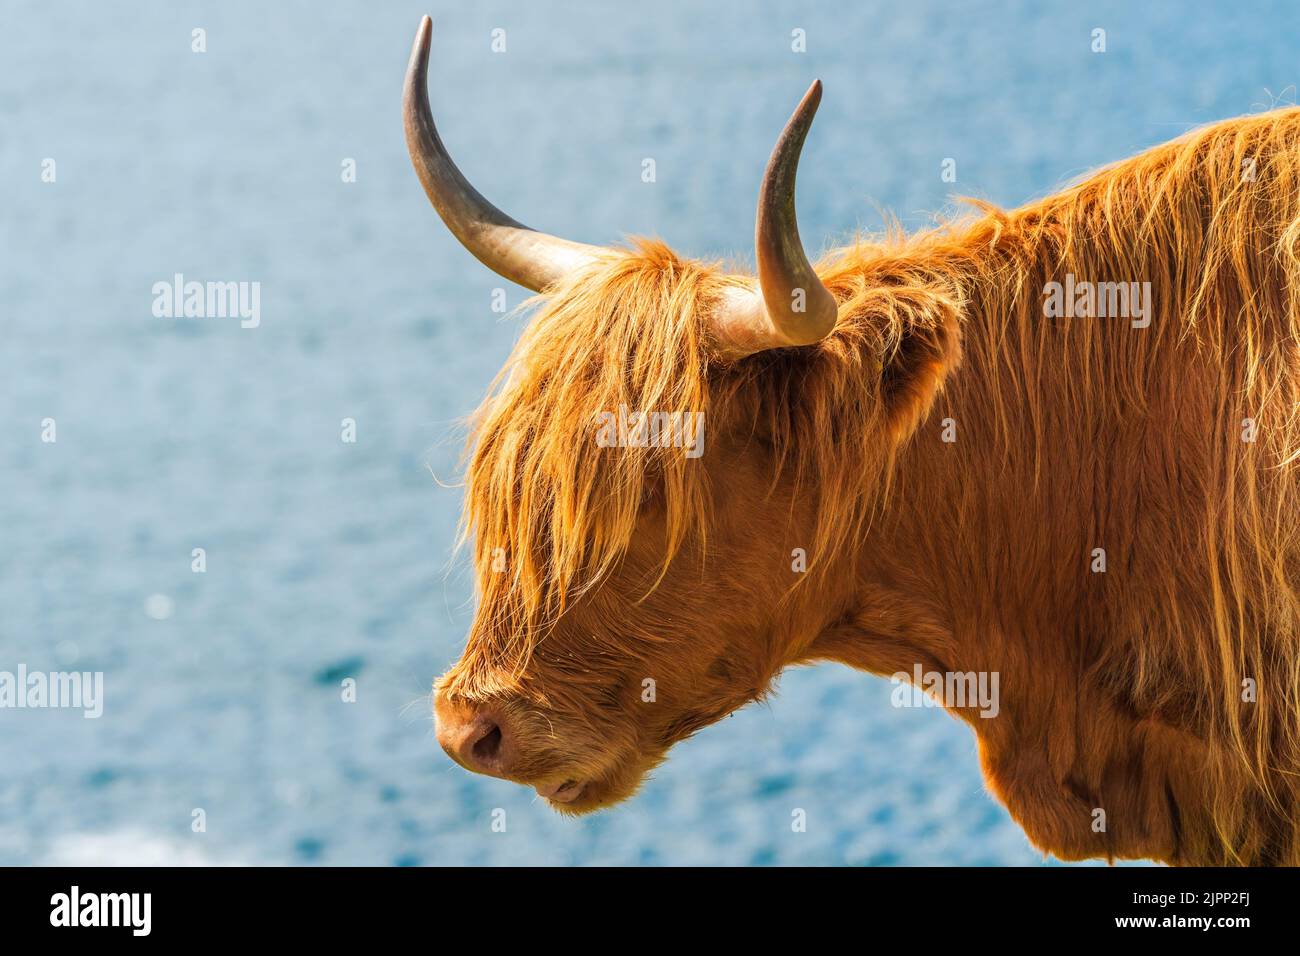 Highland cow, Isle of Harris, dans Outer Hebrides, Écosse. Mise au point sélective Banque D'Images